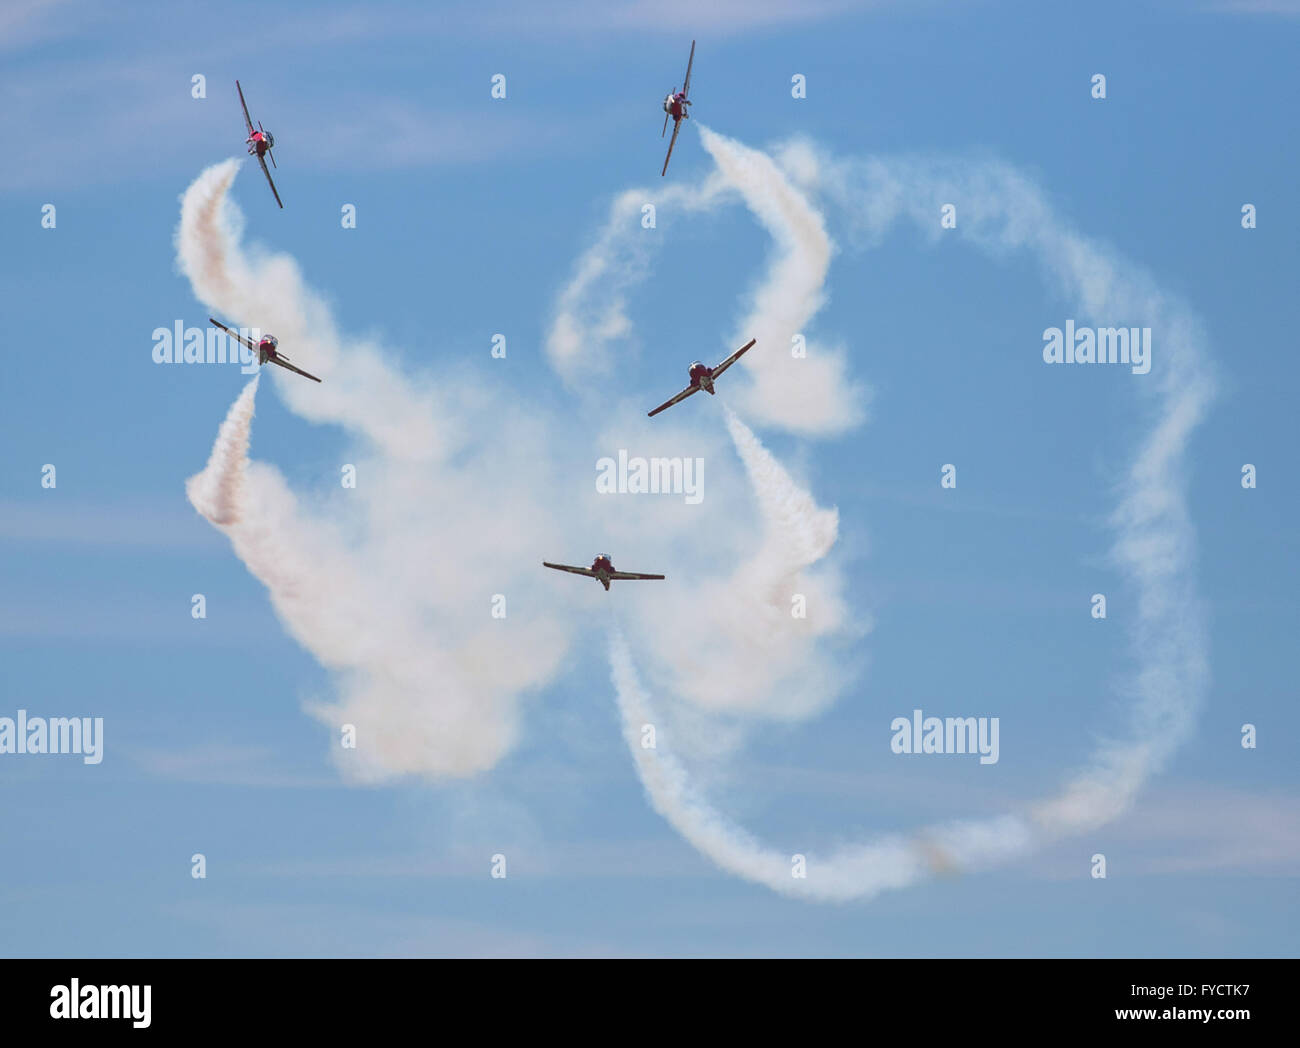 L'équipe de voltige aérienne des Snowbirds effectuer des manœuvres complexes dans le ciel au-dessus de l'aéroport de Springbank, près de Calgary, en Alberta. Banque D'Images